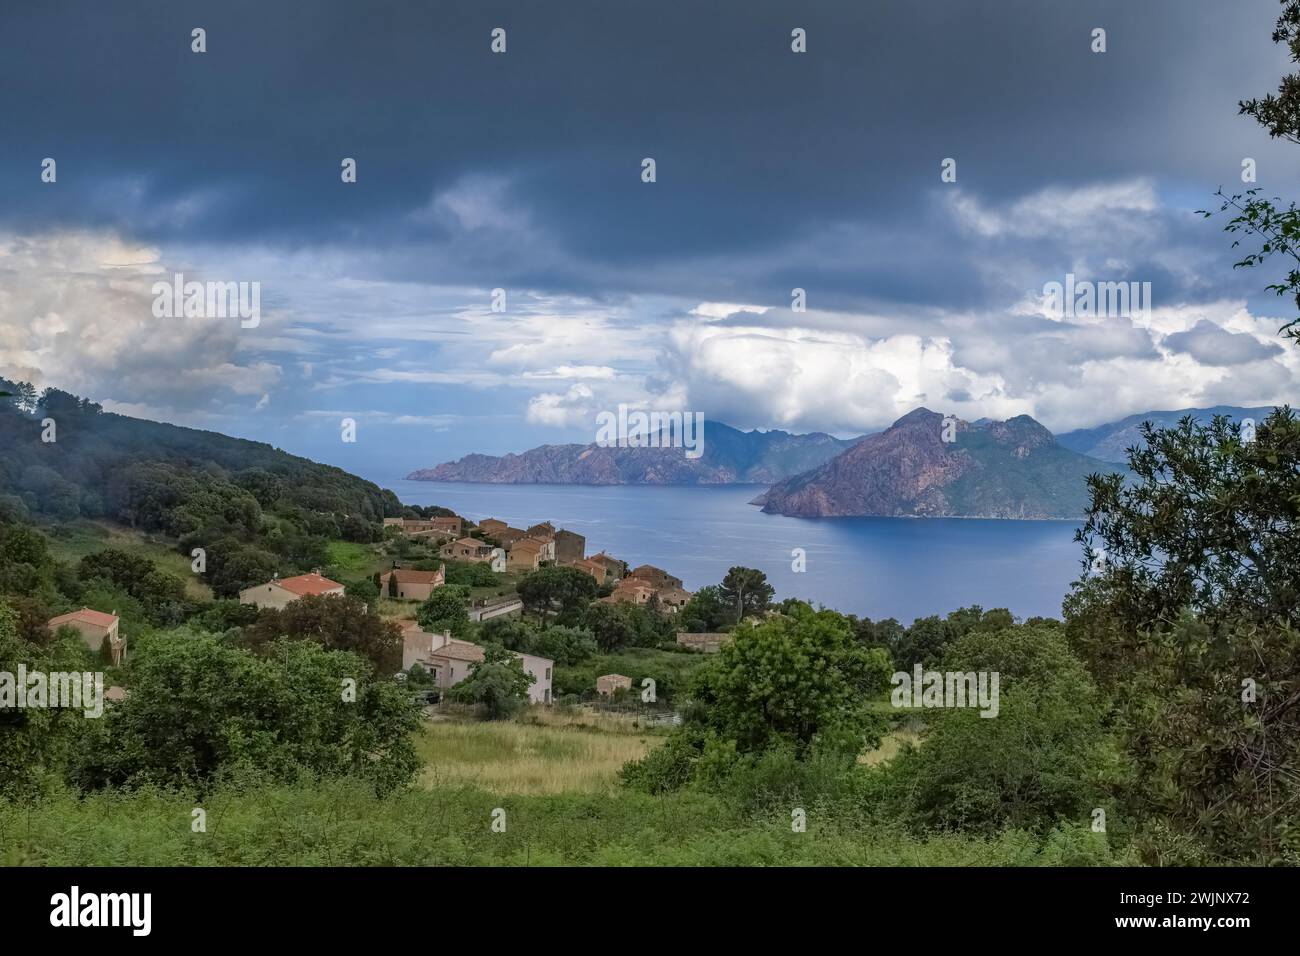 Corse, le village de Piana et ses criques, beau paysage marin en été, dans la brume Banque D'Images